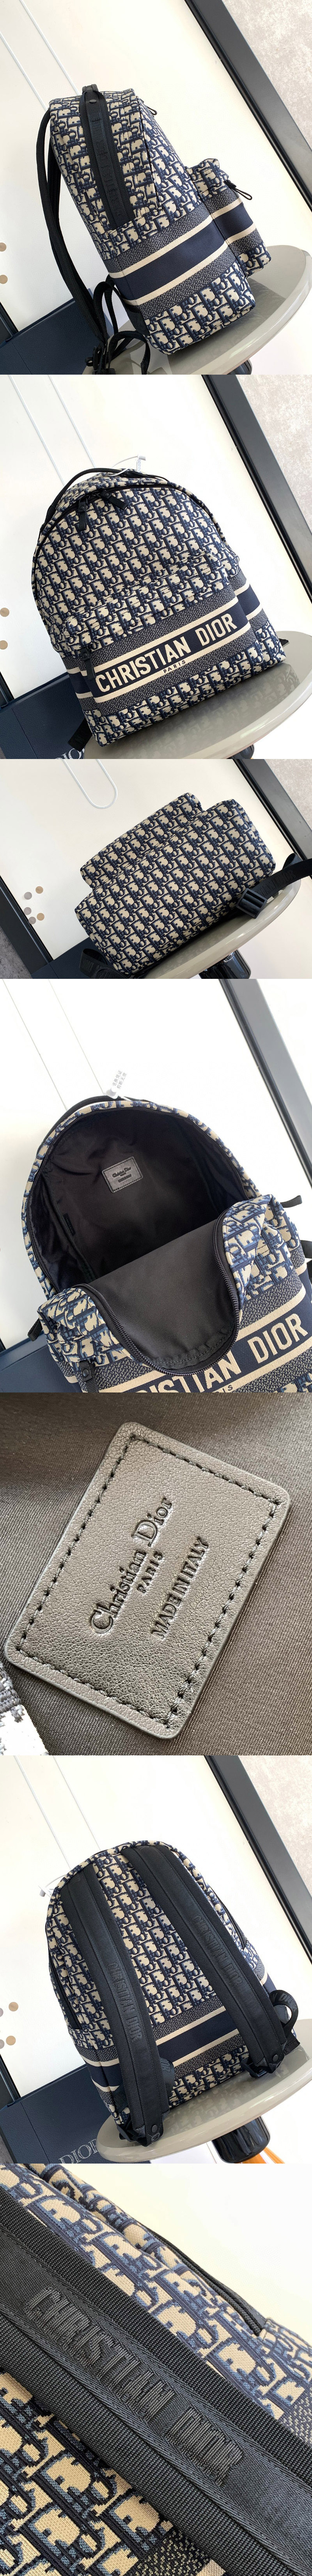 Replica Christian Dior Bags